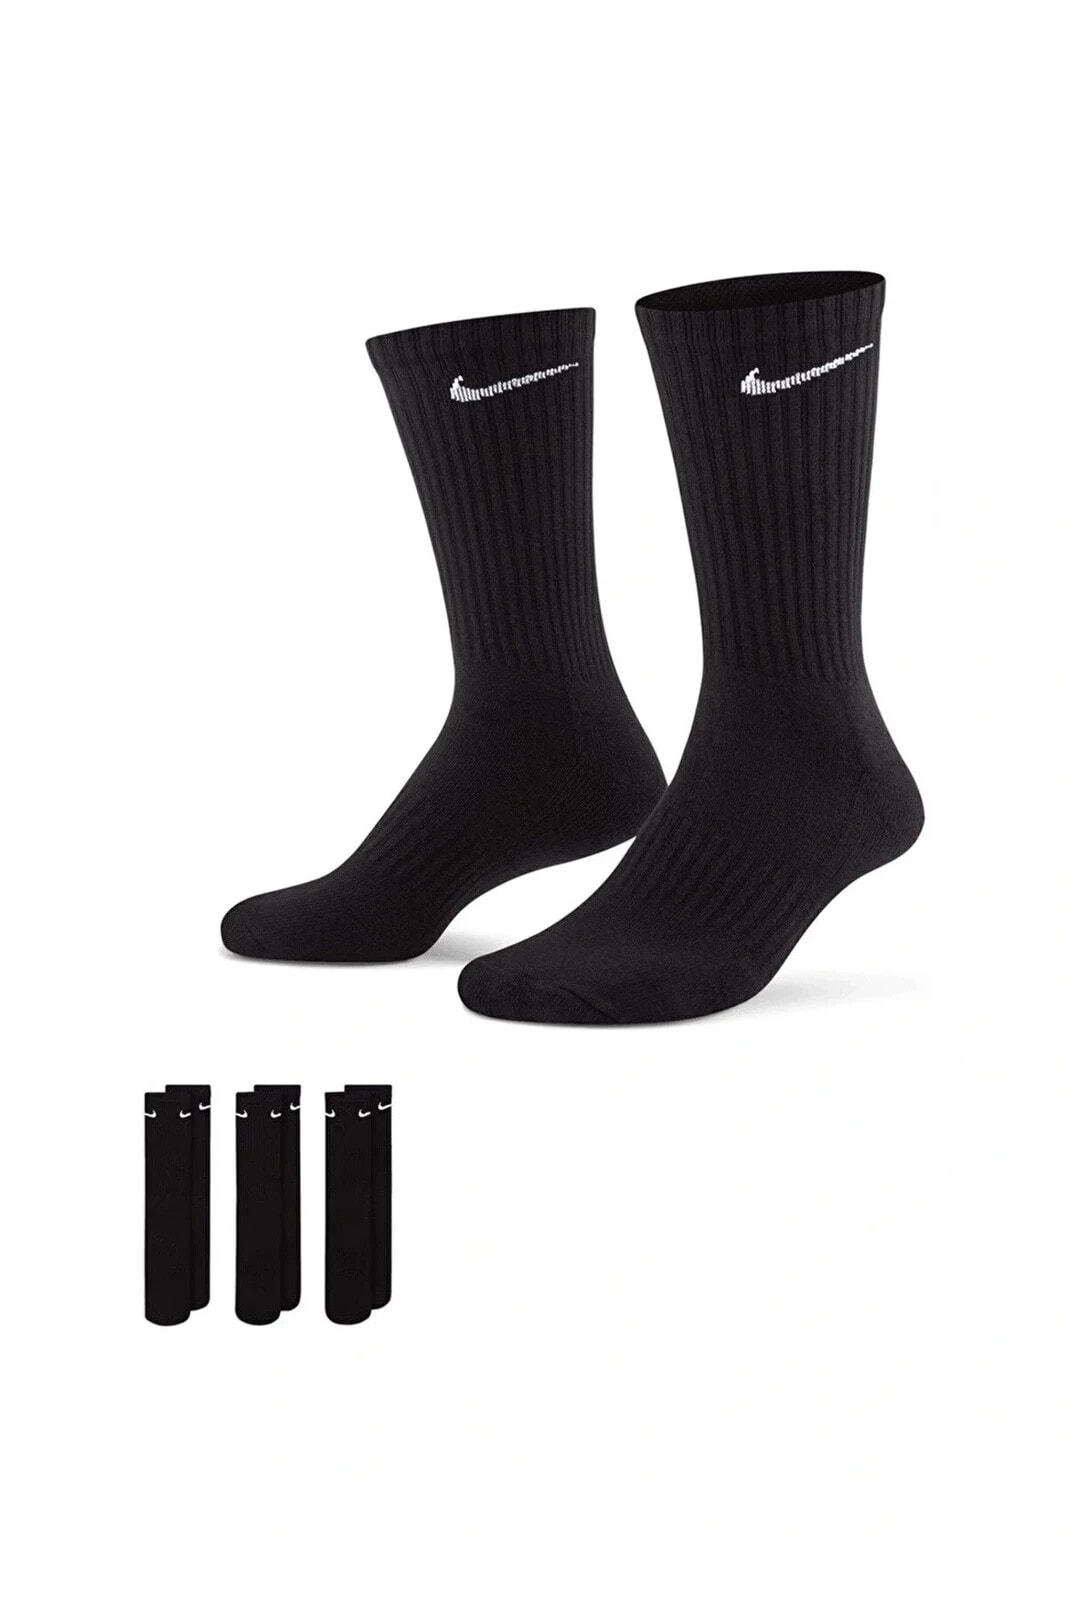 Everday Cushion Spor Uzun Siyah Unisex Çorap 3 Çift 38-42 Numara